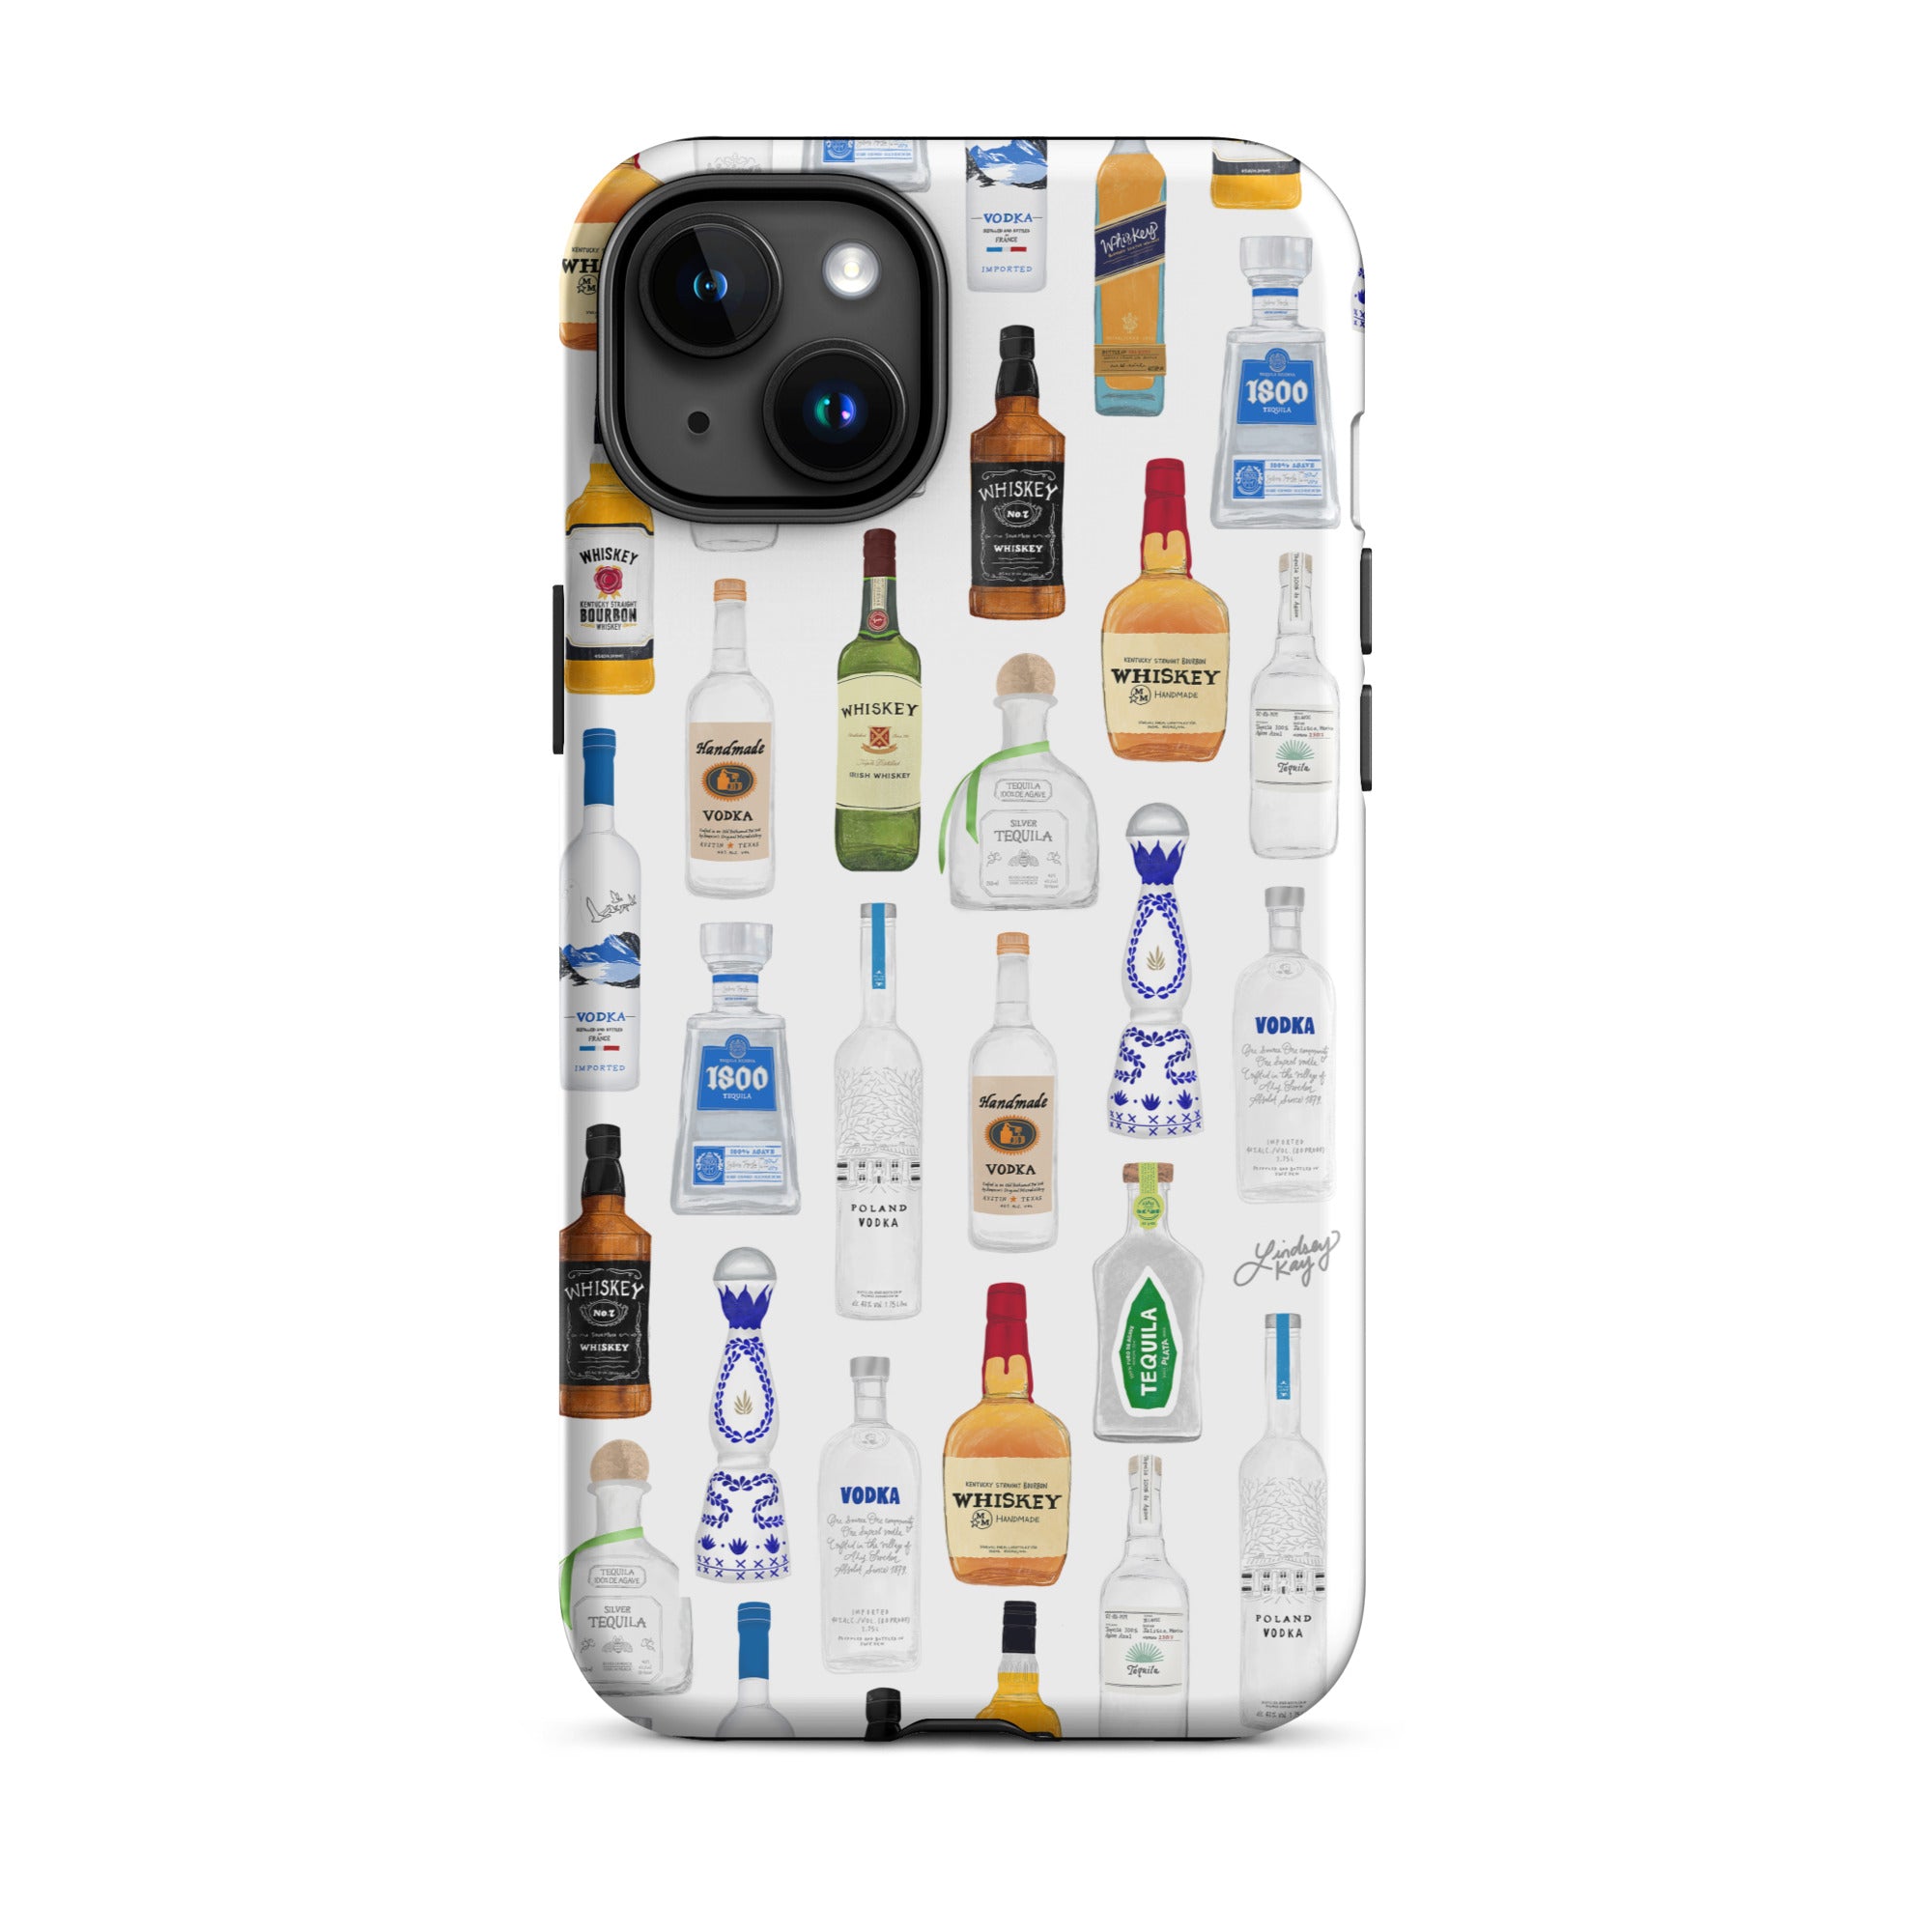 Modèle d'illustration de bouteilles d'alcool - Coque rigide pour iPhone®